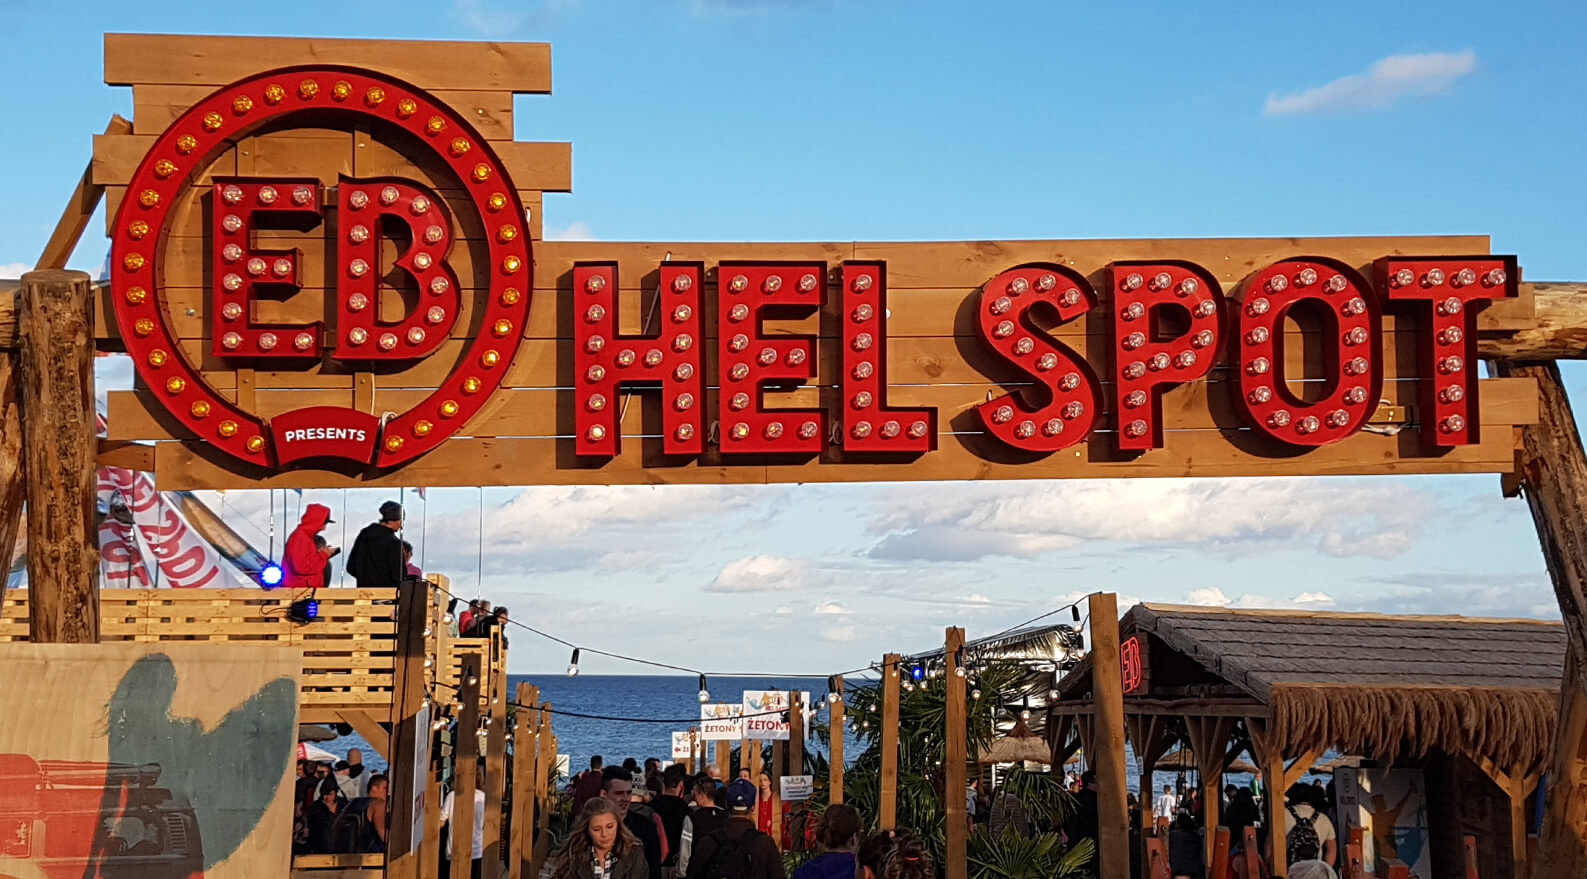 EB hell spot - EB Hel Spot Festiwal - logo i litery z żarówkami umieszczone na stelażu drewnianym nad wejściem